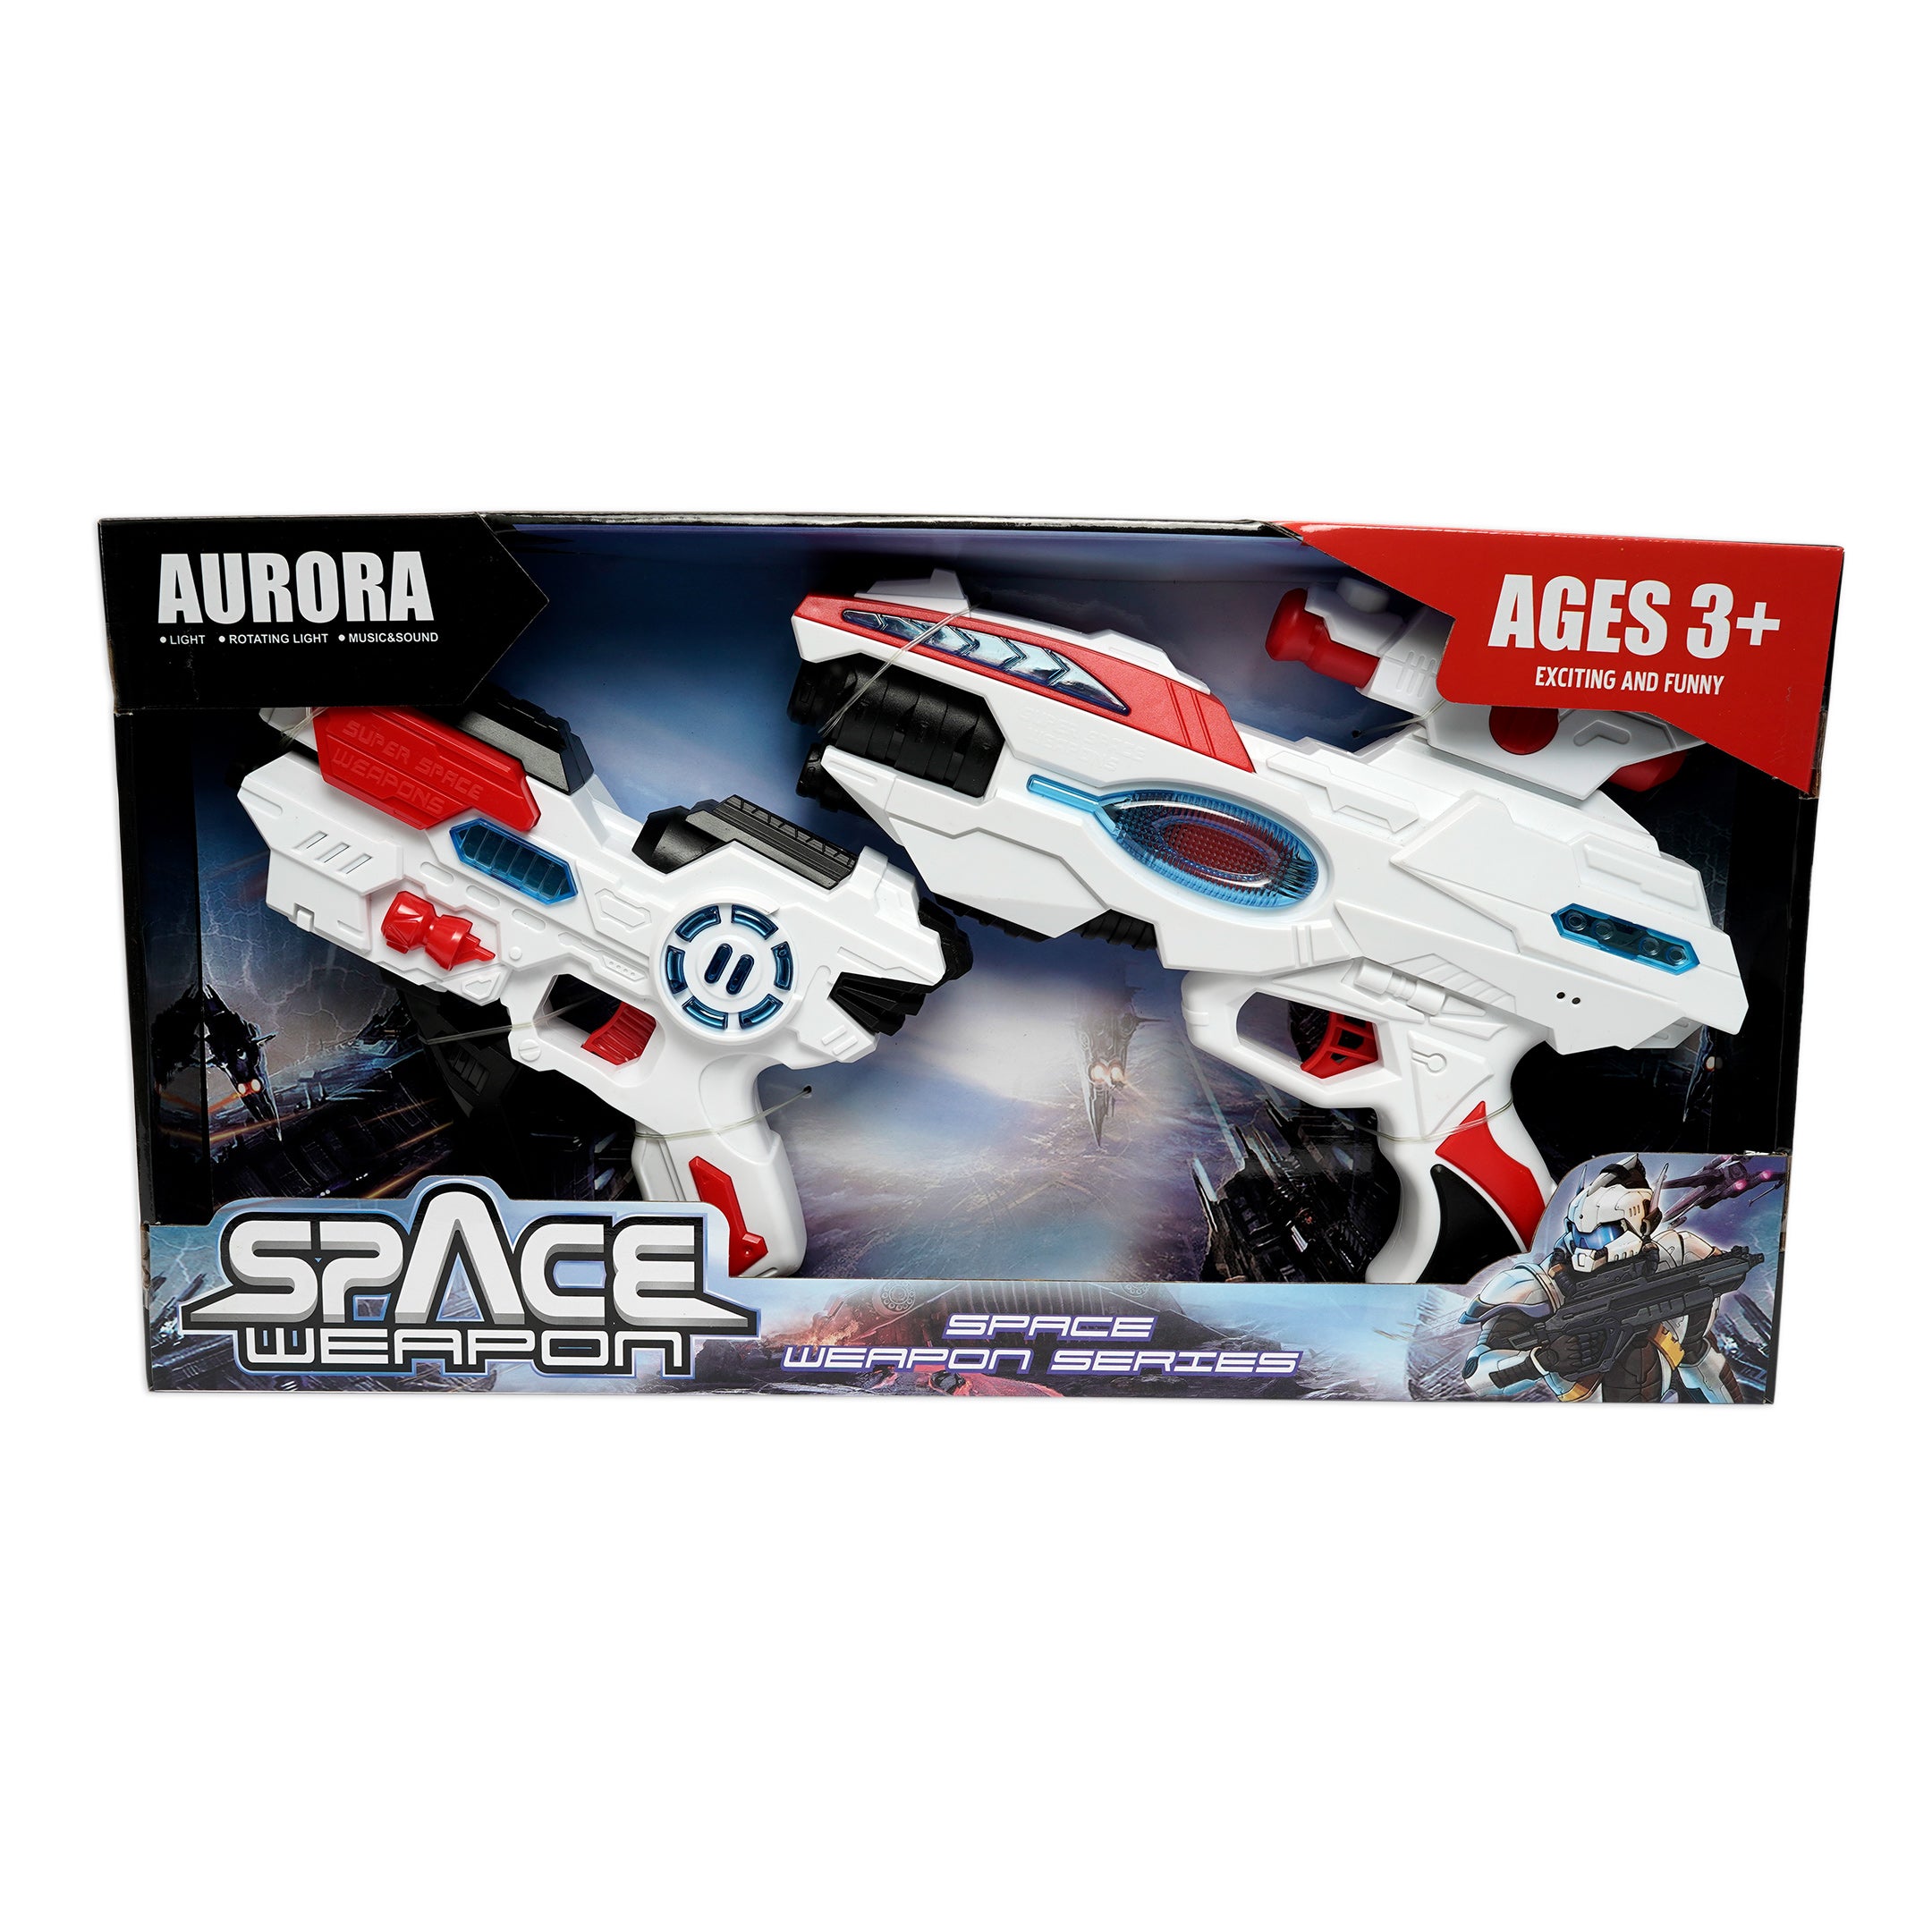 Aurora Space Weapon Toy Gun